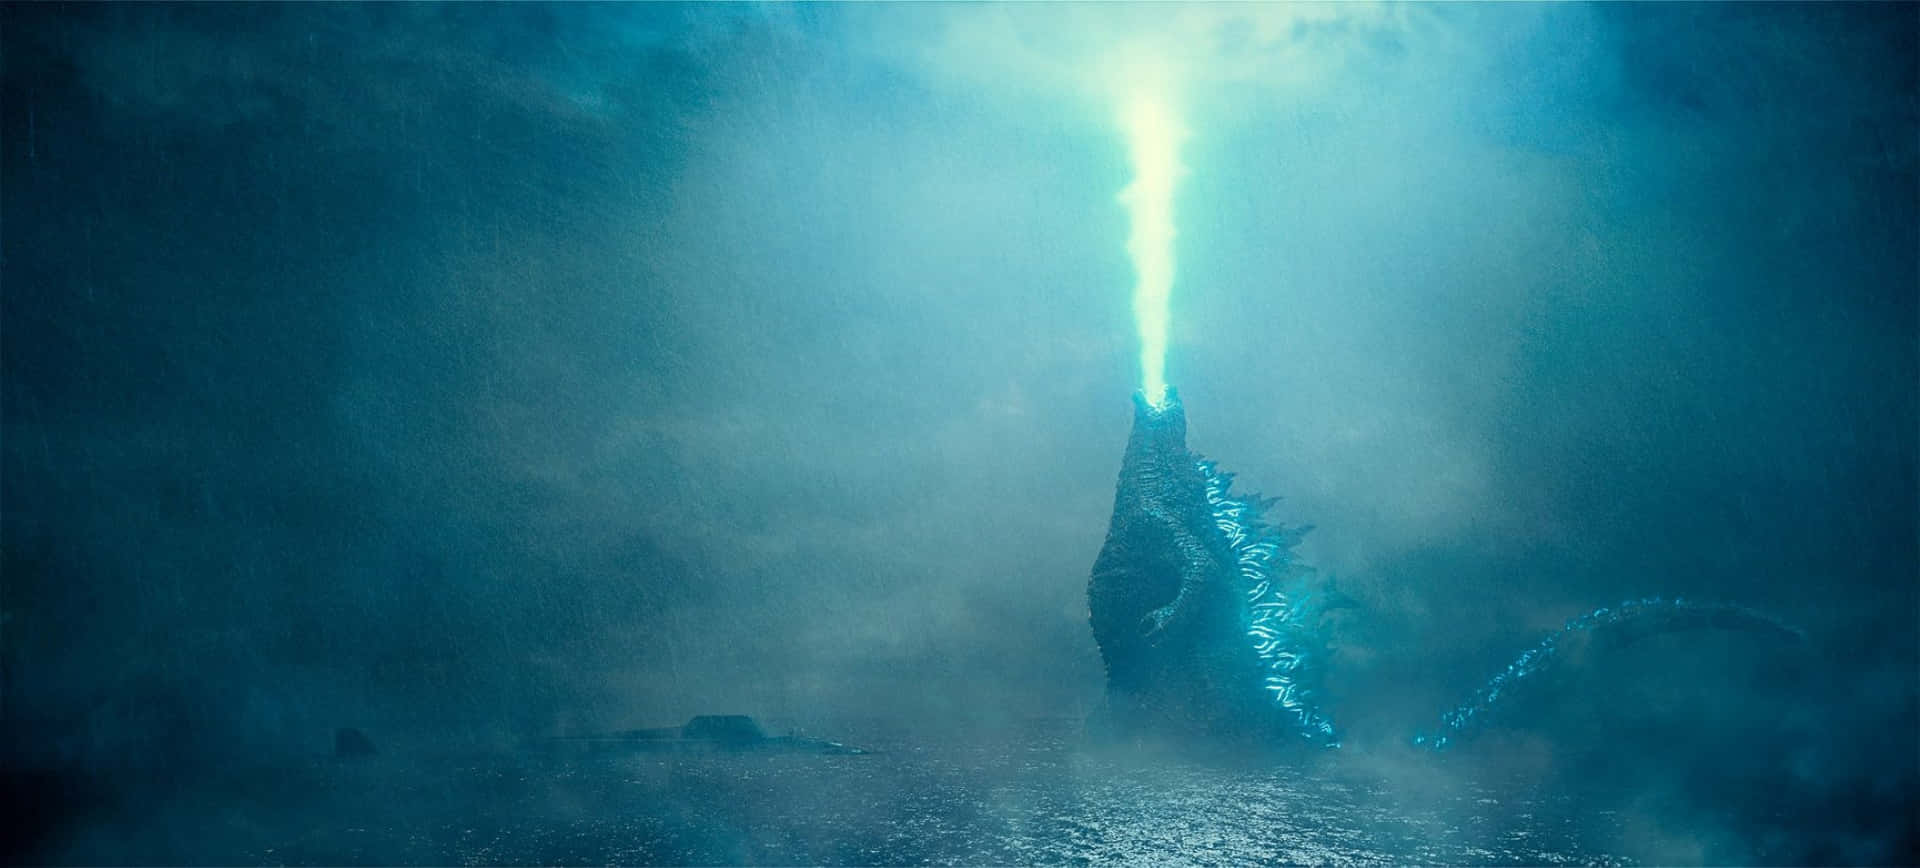 Godzilladesata Su Icónico Aliento Atómico En Una Exhibición Impresionante De Poder. Fondo de pantalla